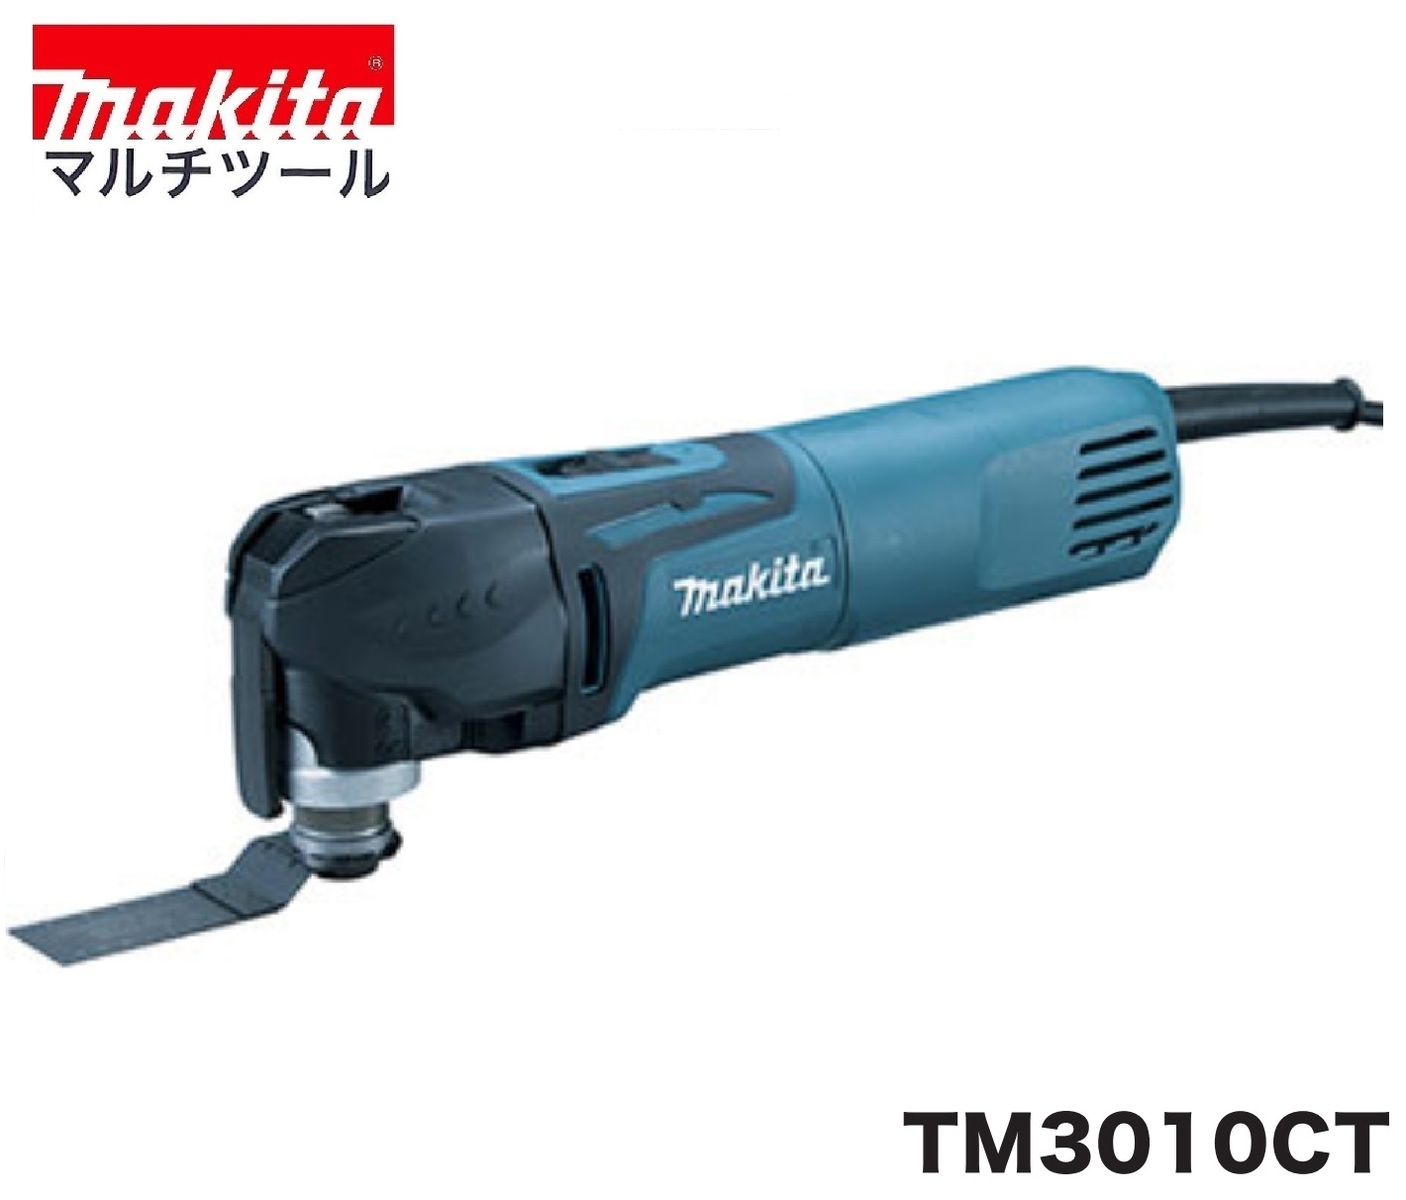 全商品オープニング価格 マキタ TM3010CT マルチツール 激安特価